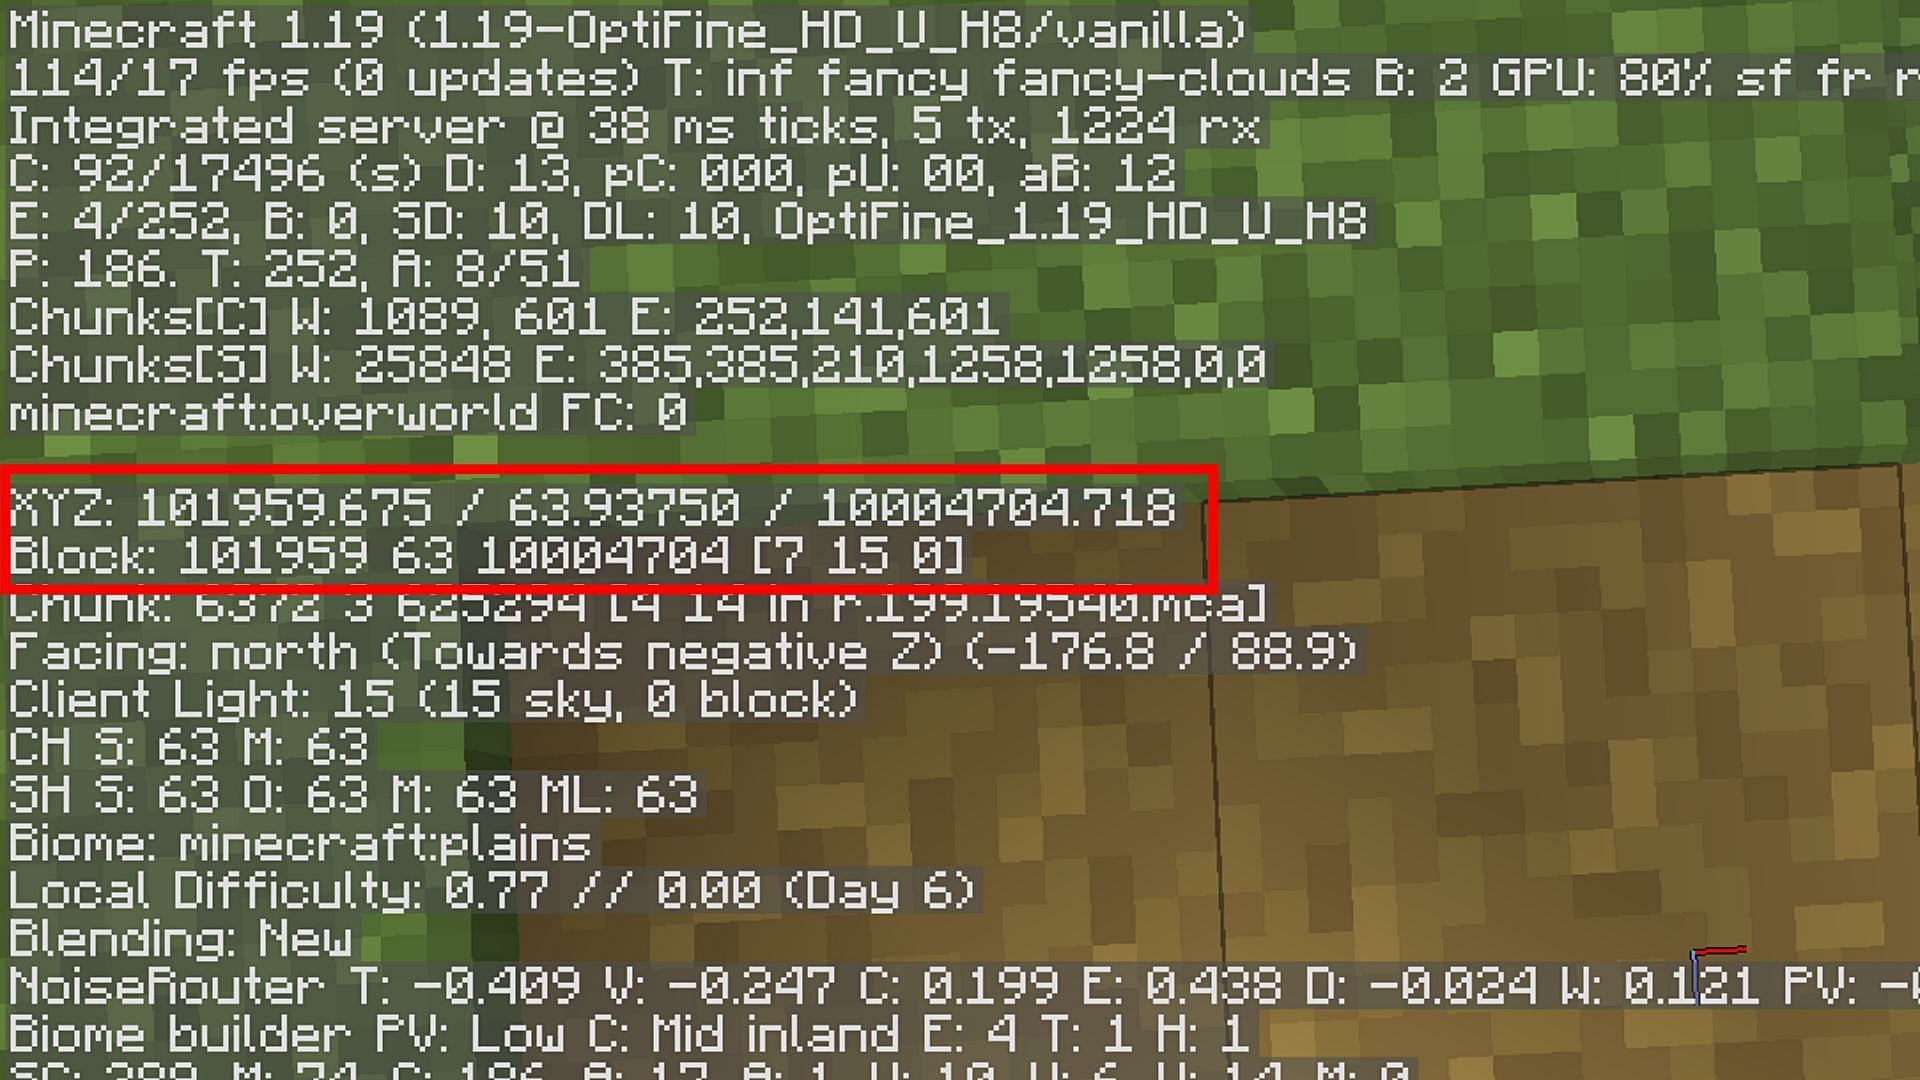 Exact coordinates and block coordinate in debug screen (Image via Minecraft Java 1.19 update)